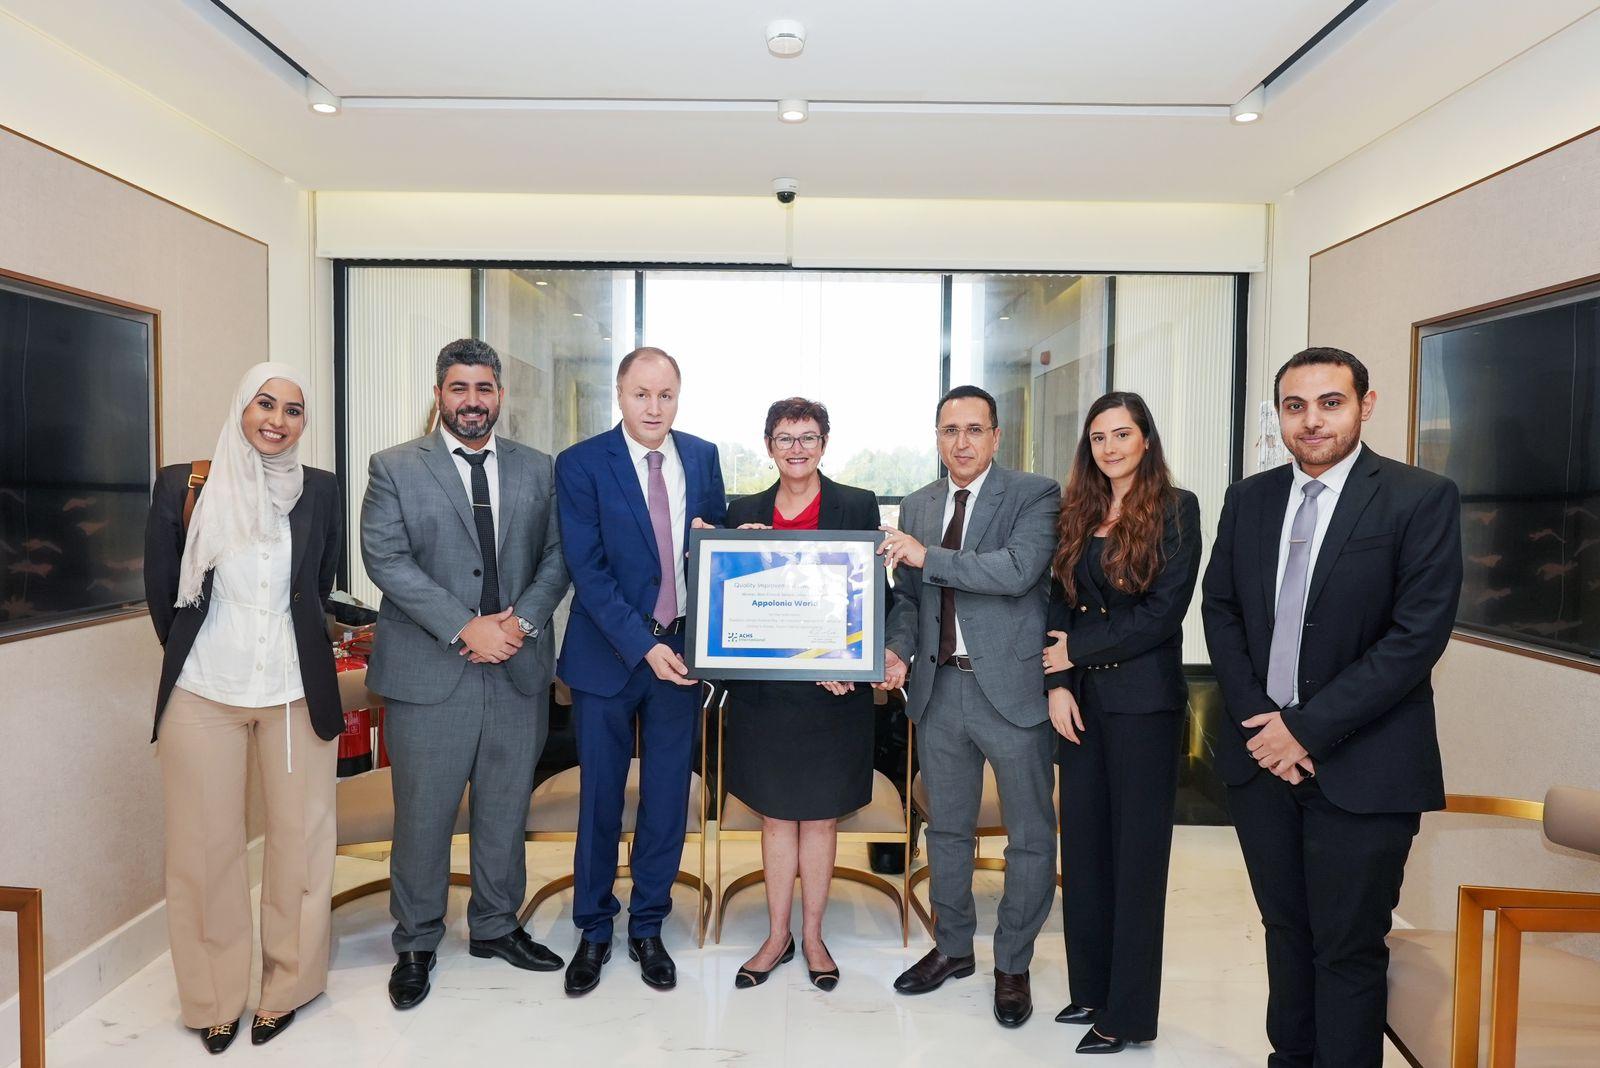 الإمارات تحصد جائزة الرعاية الصحية "ACHSI" مجموعة عالم أبولونيا الطبية